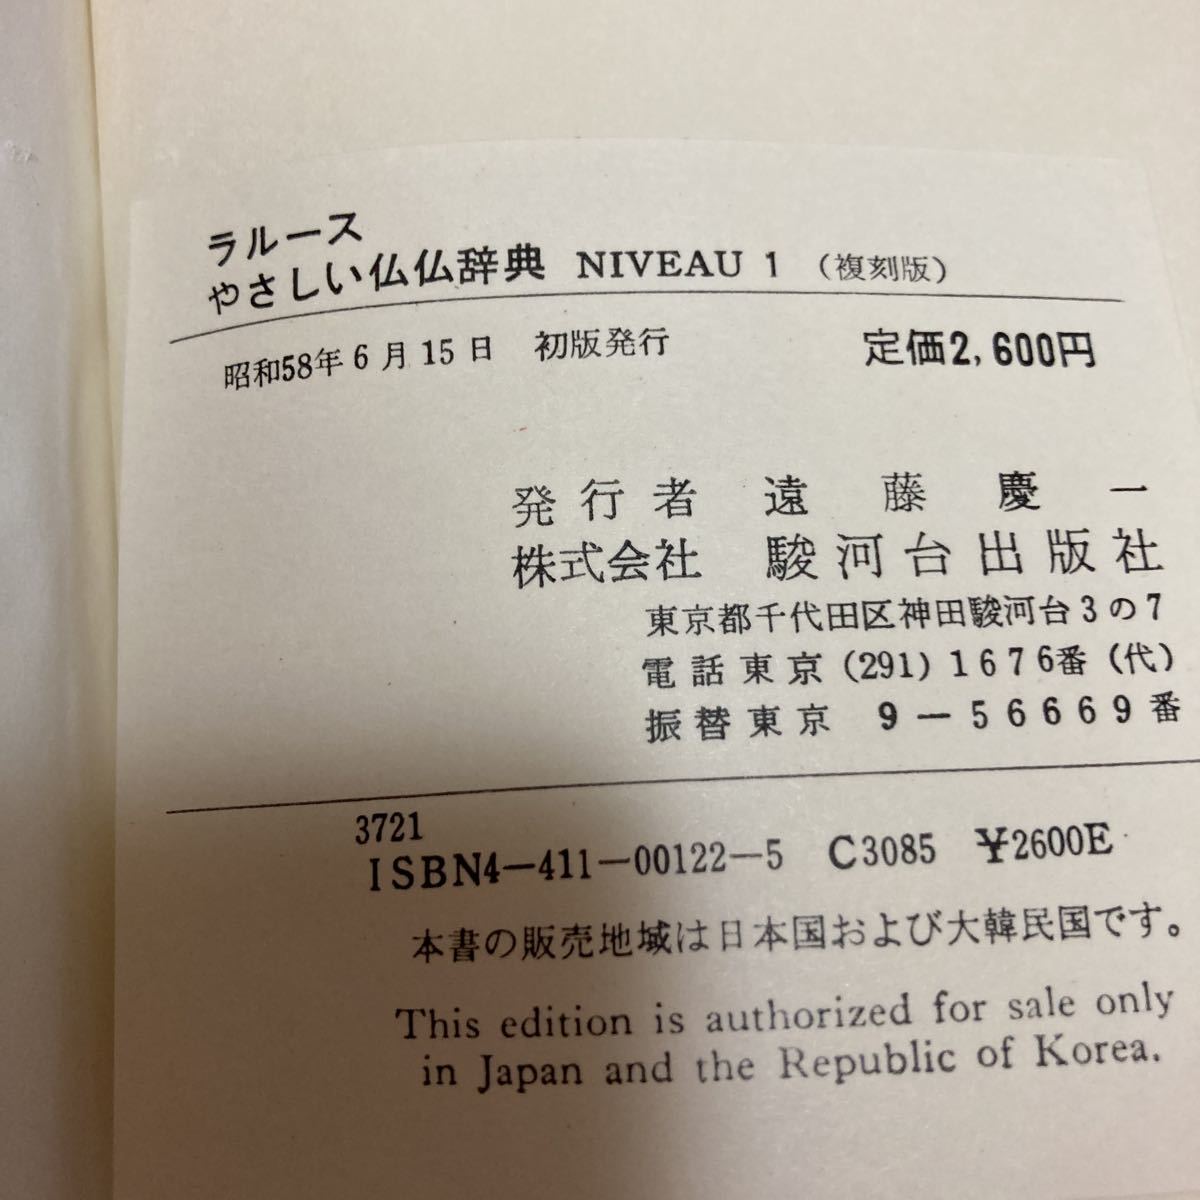 [ первая версия ]la разрозненный ...... словарь NIVEAU1 Showa 58 год . река шт. выпускать фирма 